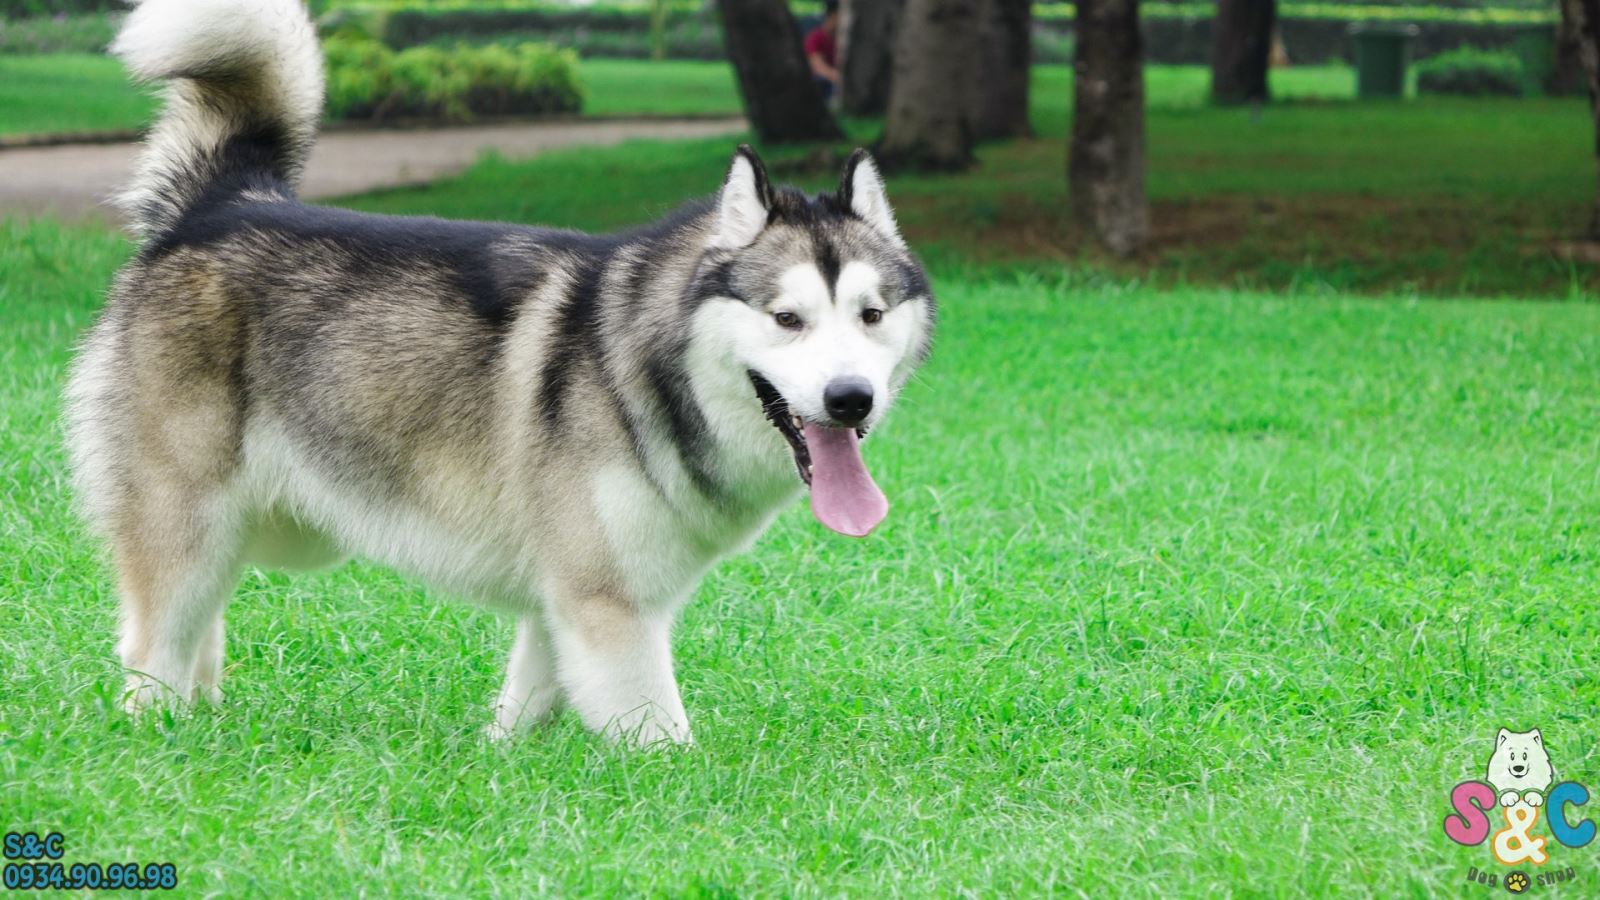 Kỹ thuật huấn luyện chó Alaska – Bình tĩnh, kiểm soát năng lượng và quyết đoán